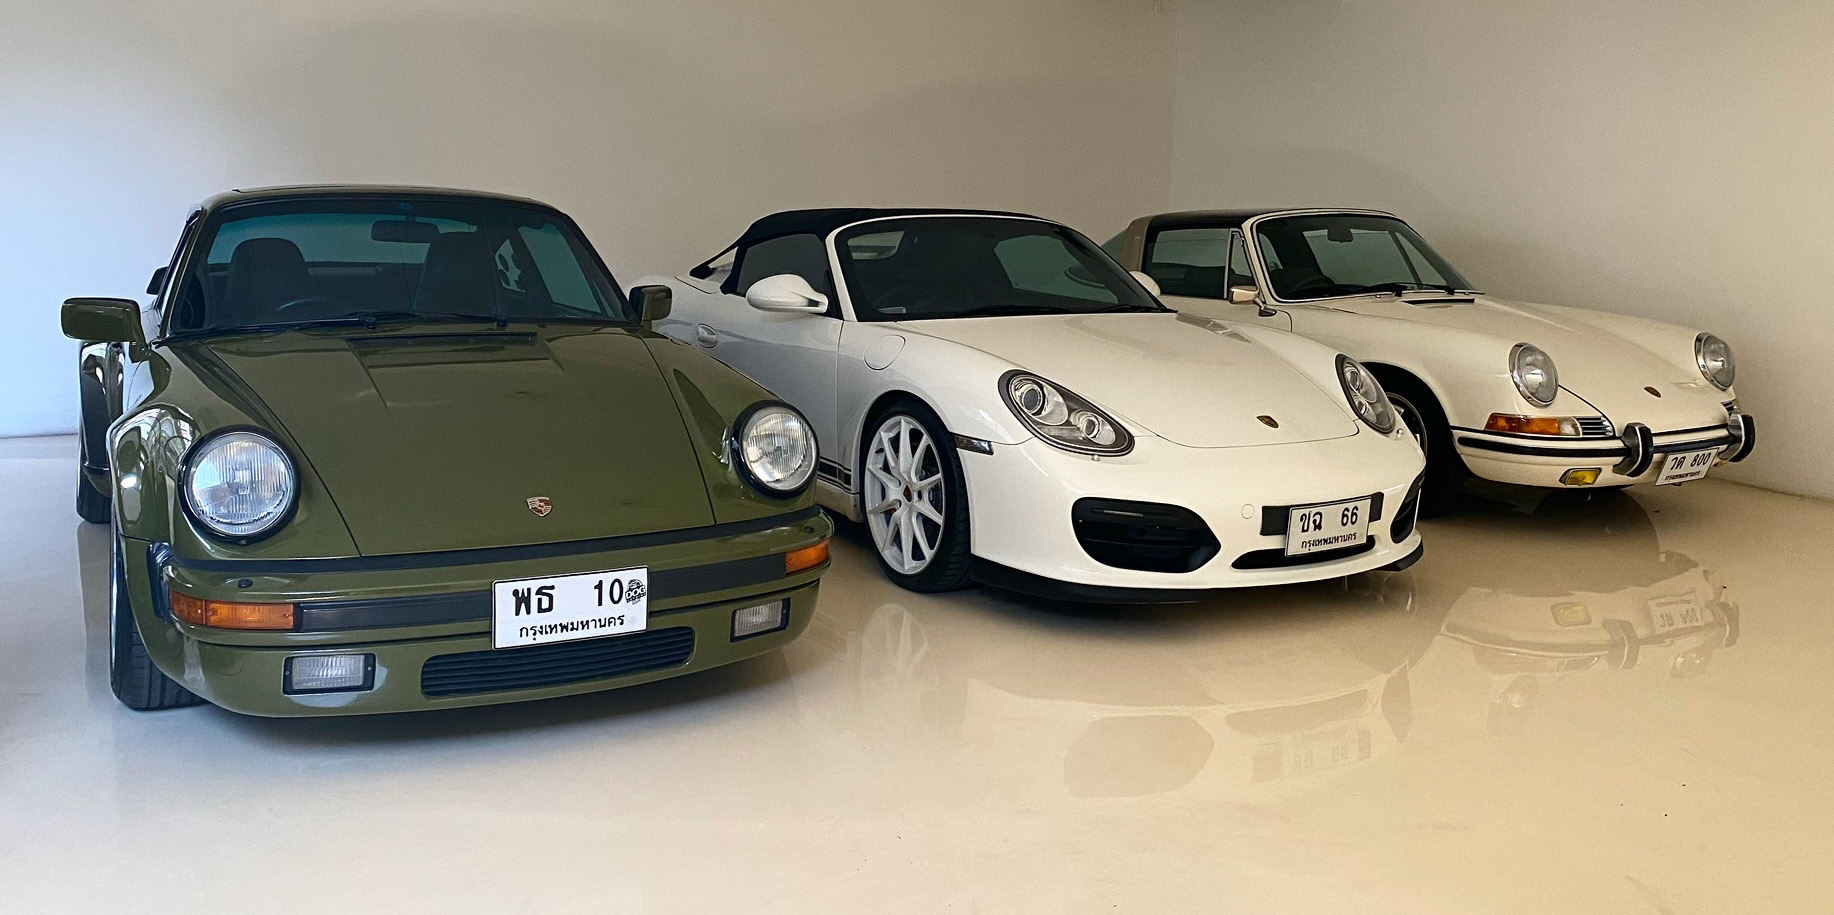 Three Porsche models in a garage